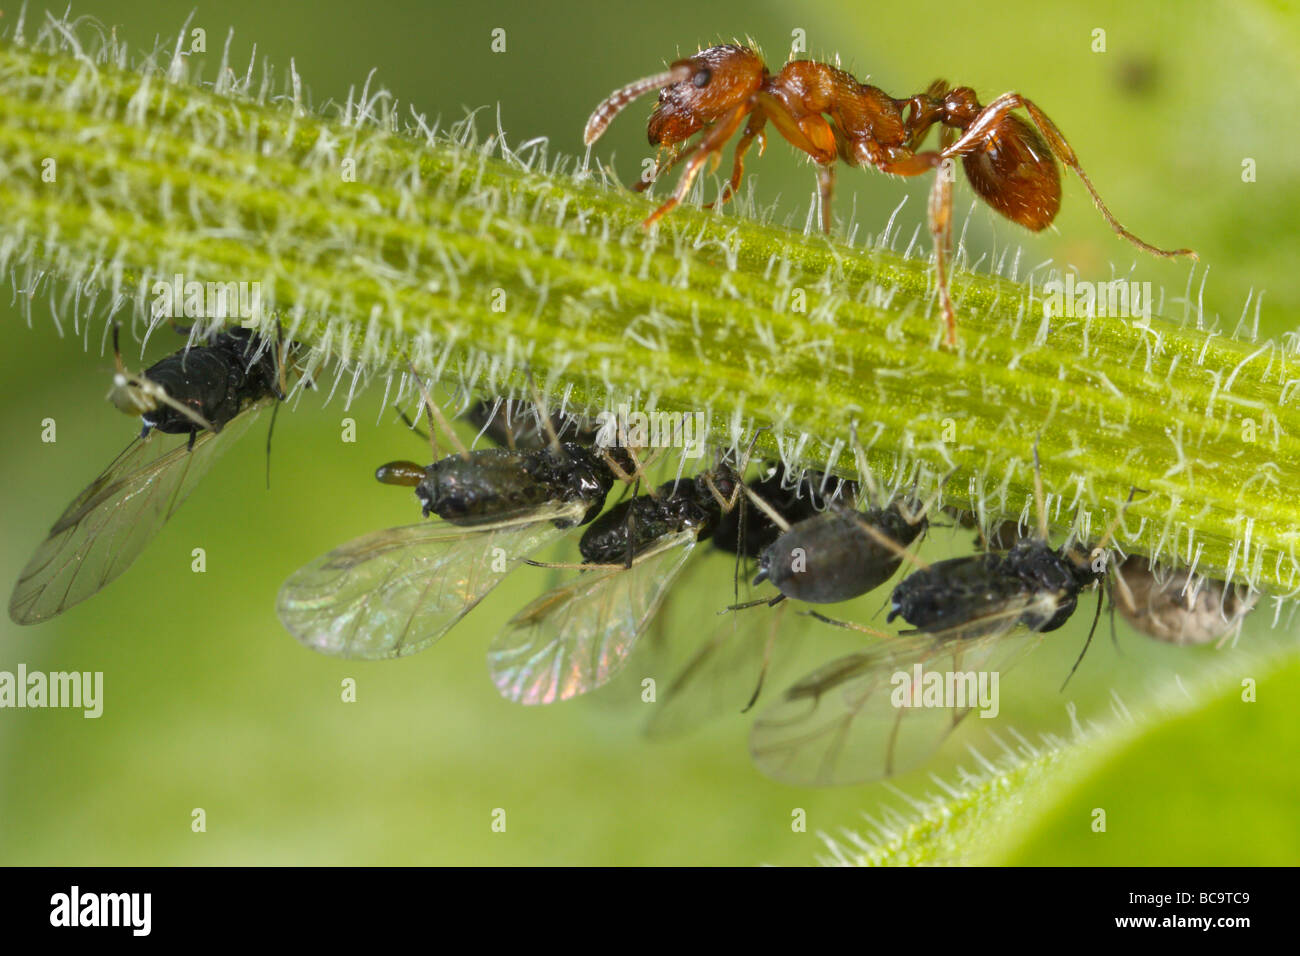 Myrmica Ameise tendenziell Blattläuse. Sie Melken die Blattläuse, die Honigtau ist sehr reich an Zucker. Stockfoto